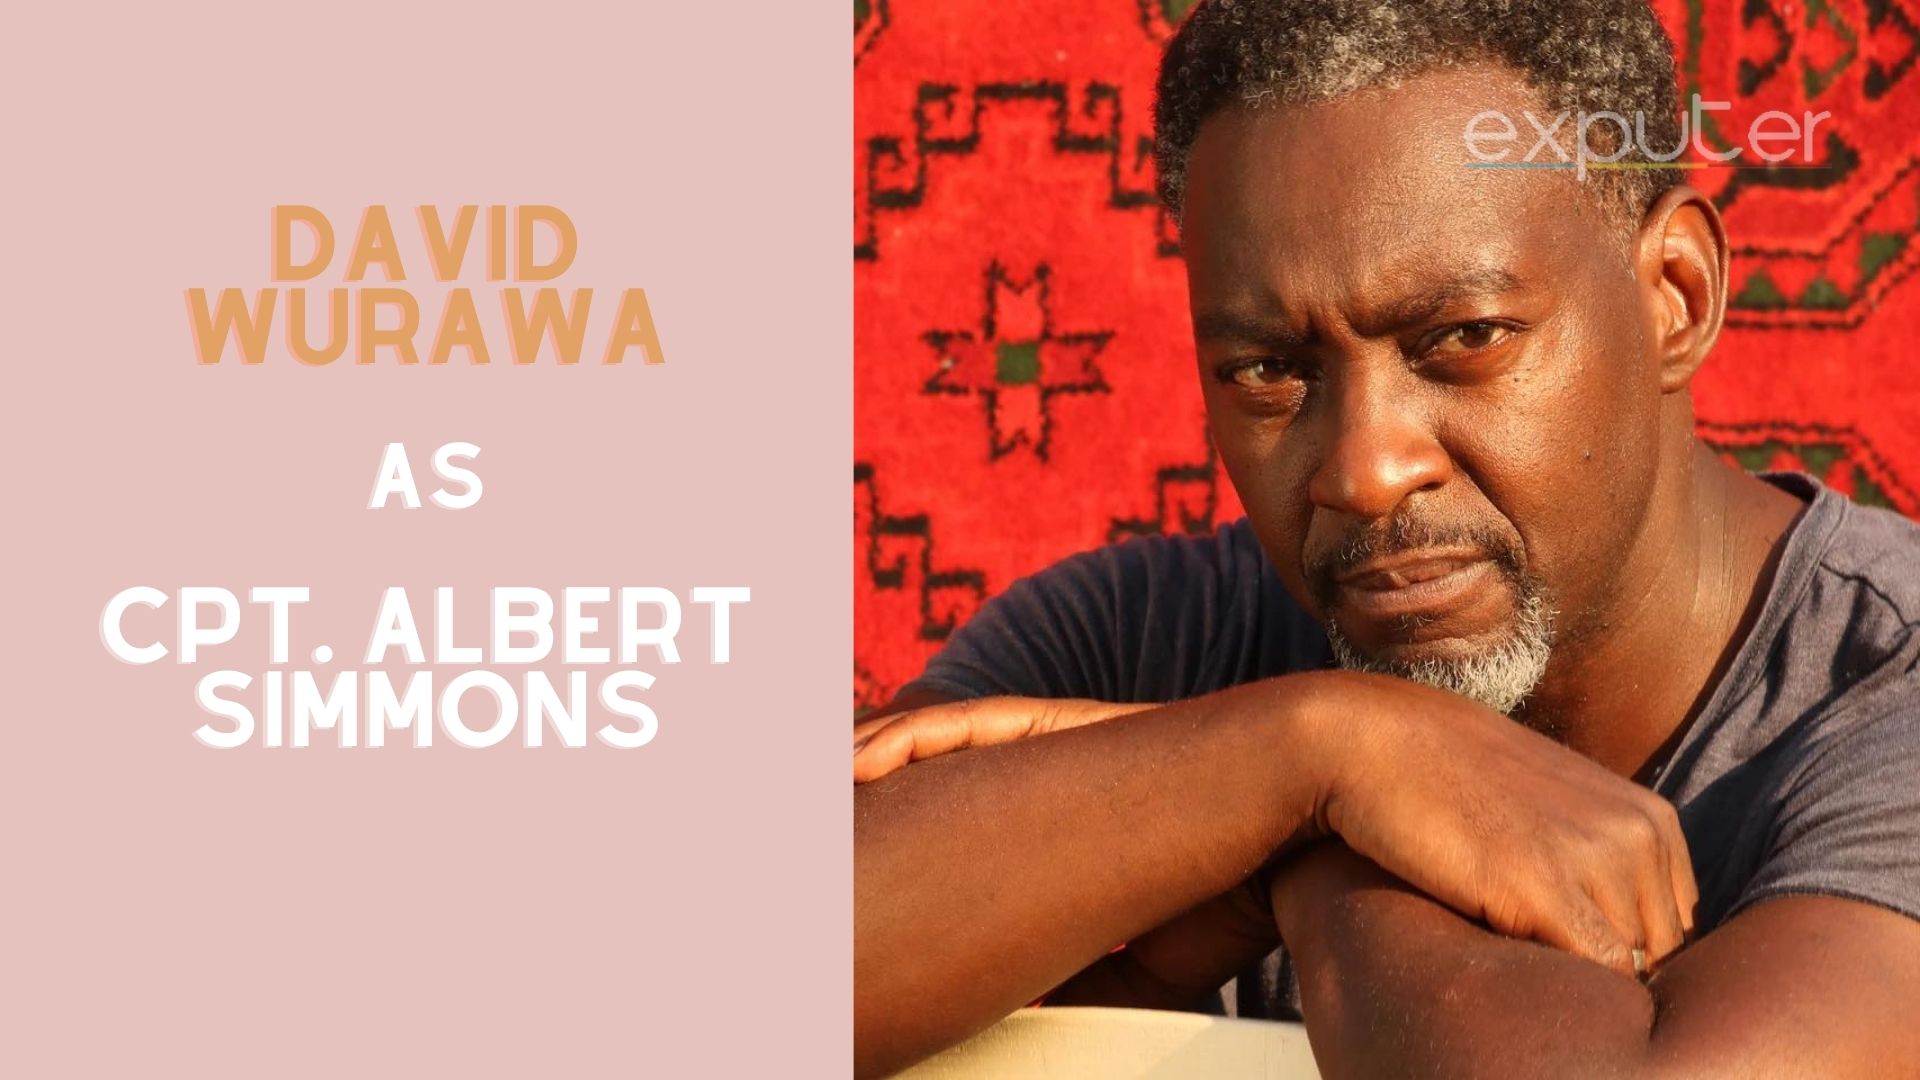 David Wurawa, the voice of Cpt. Albert Simmons.